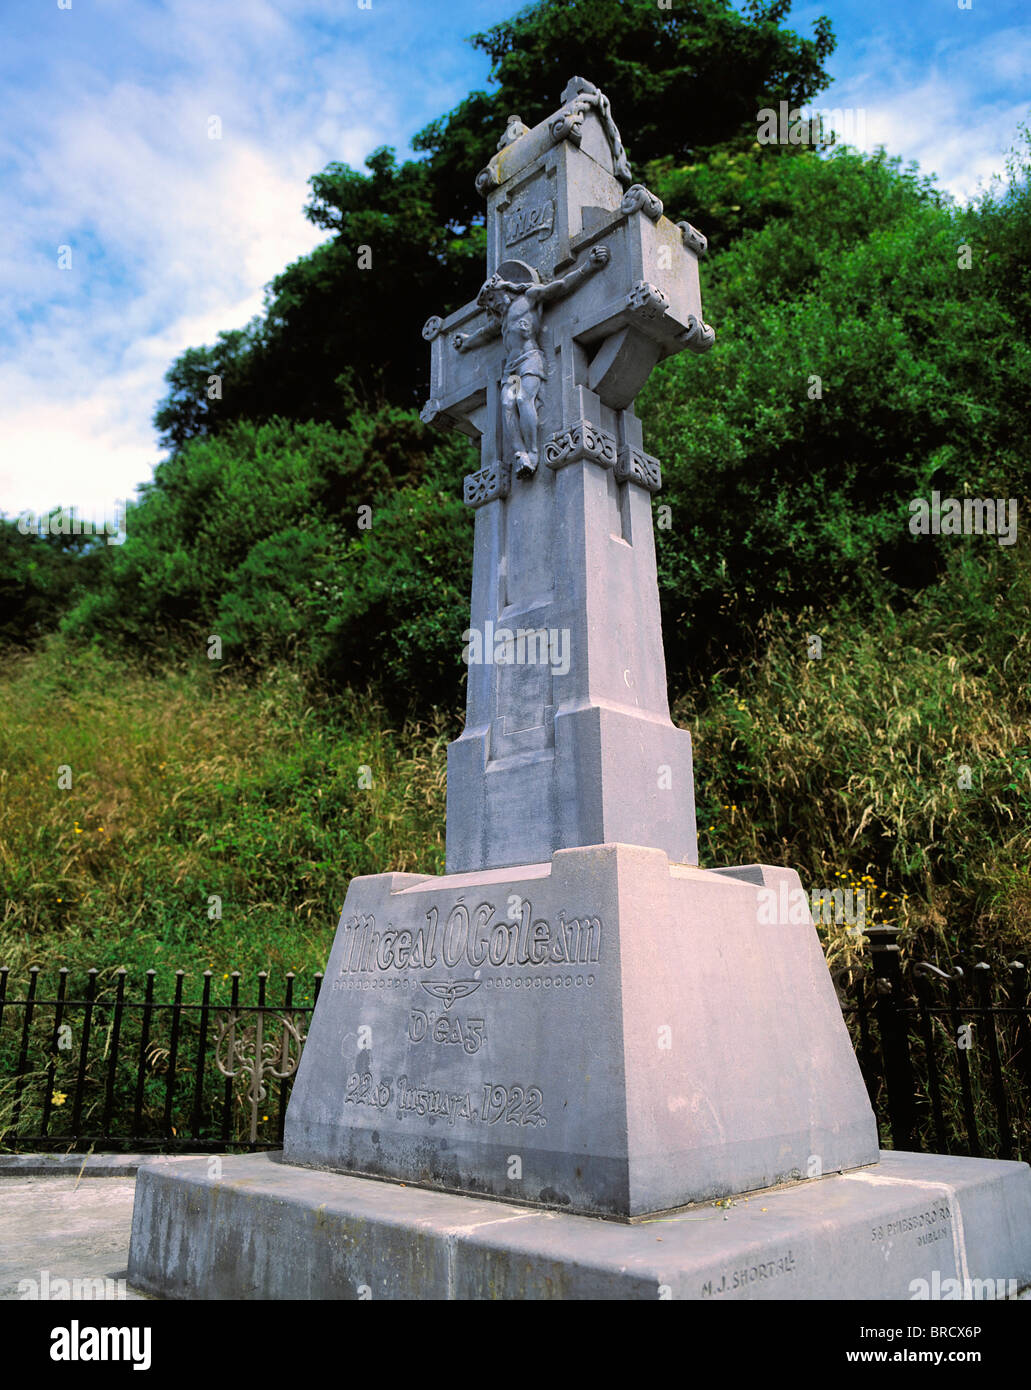 Michael Collins Memorial, Co. Cork, Irland; Denkmal für die irischen Revolutionsführers getötet während des irischen Bürgerkriegs im Jahre 1922 Stockfoto